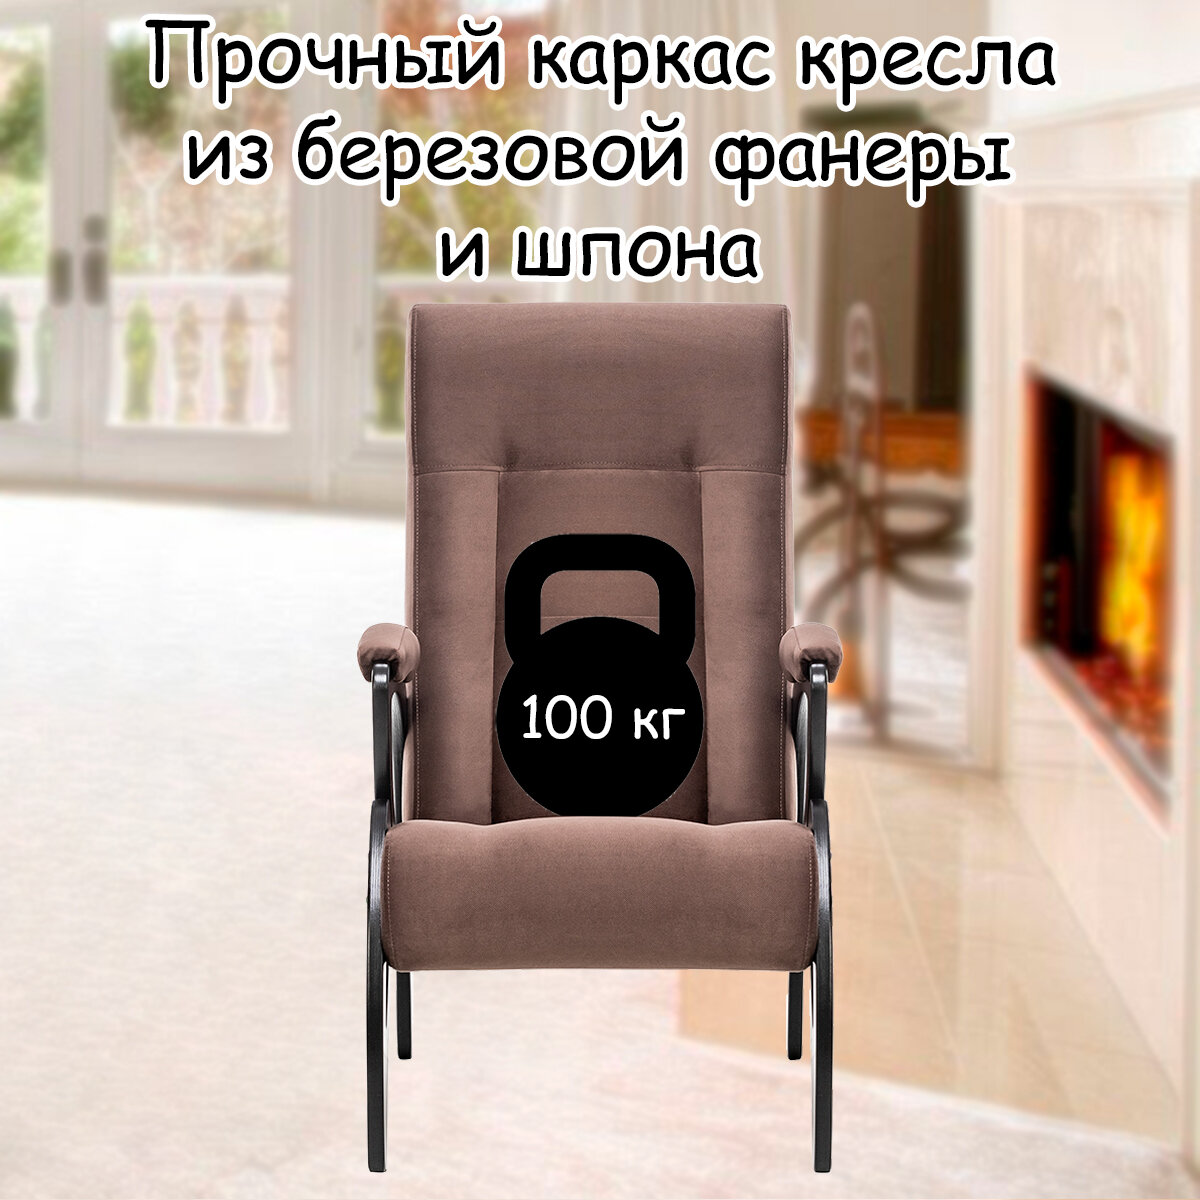 Кресло для взрослых 58.5х87х99 см, модель 51, maxx, цвет: Maxx 235 (коричневый), каркас: Venge (черный) - фотография № 3